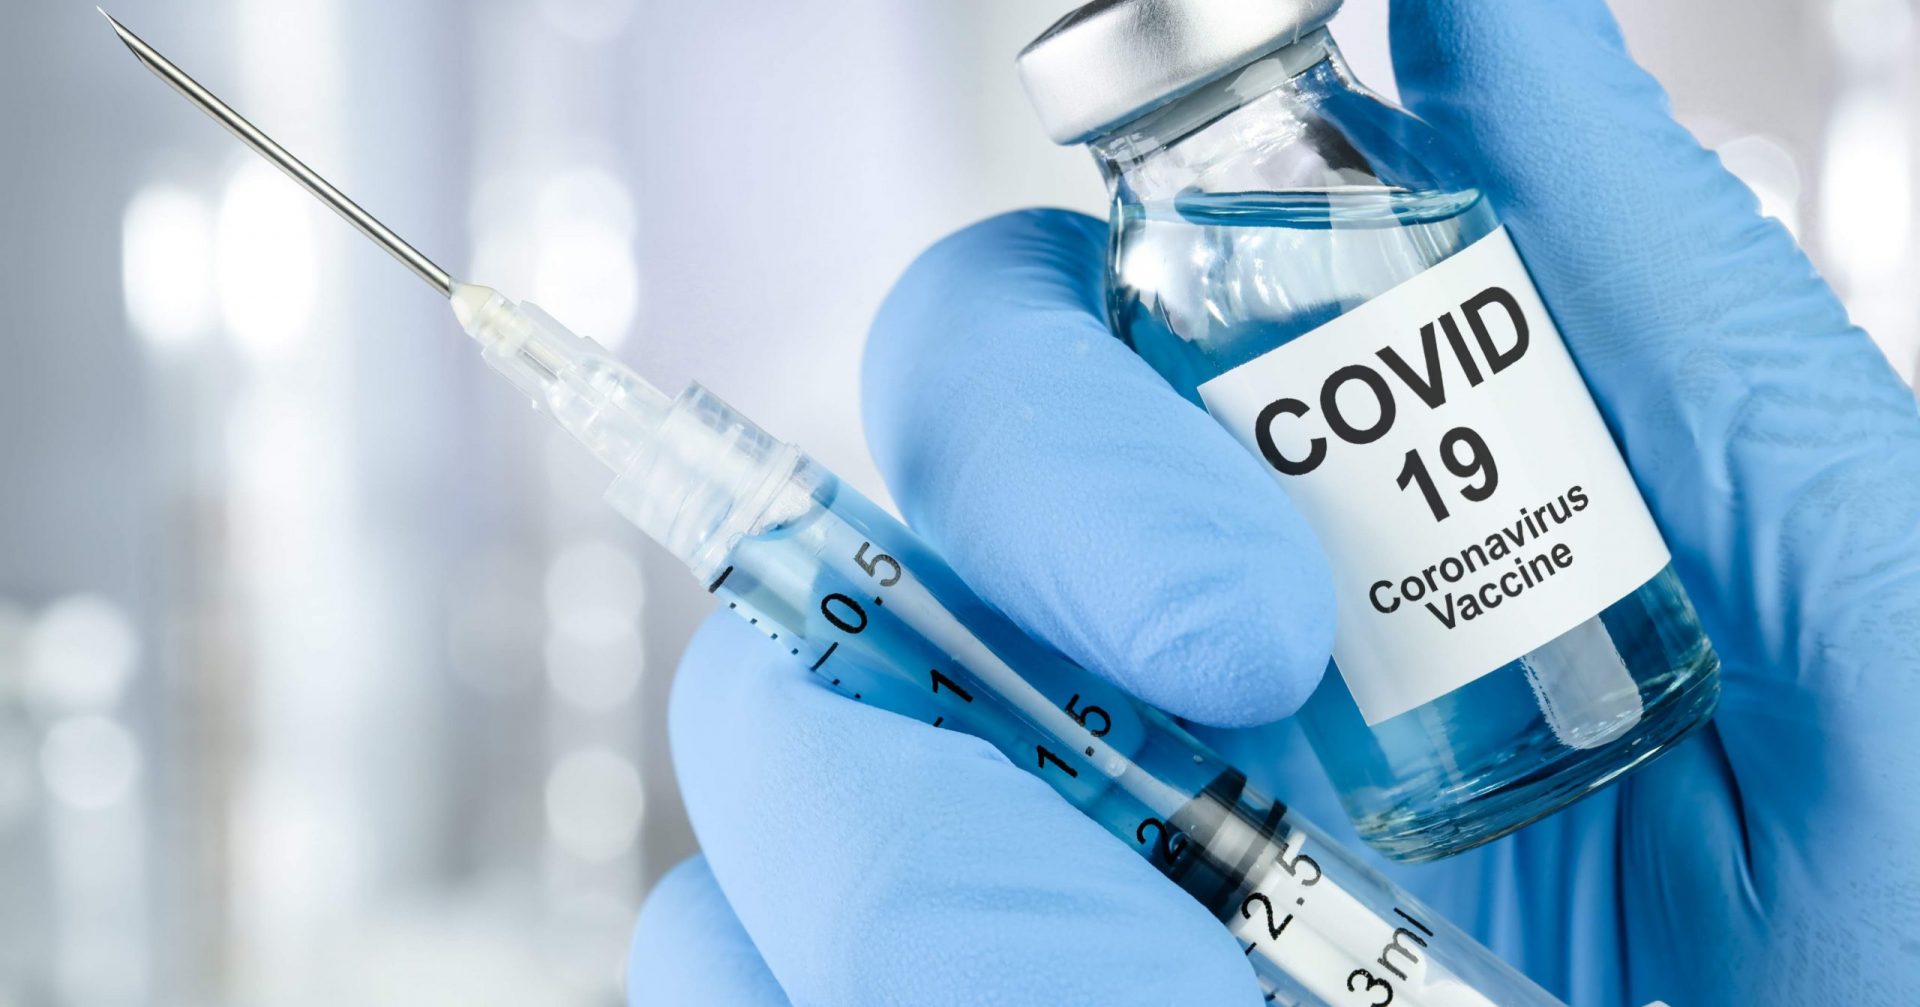 Vaccinazioni anti-Covid19 in Italia: come sono organizzate le strutture?